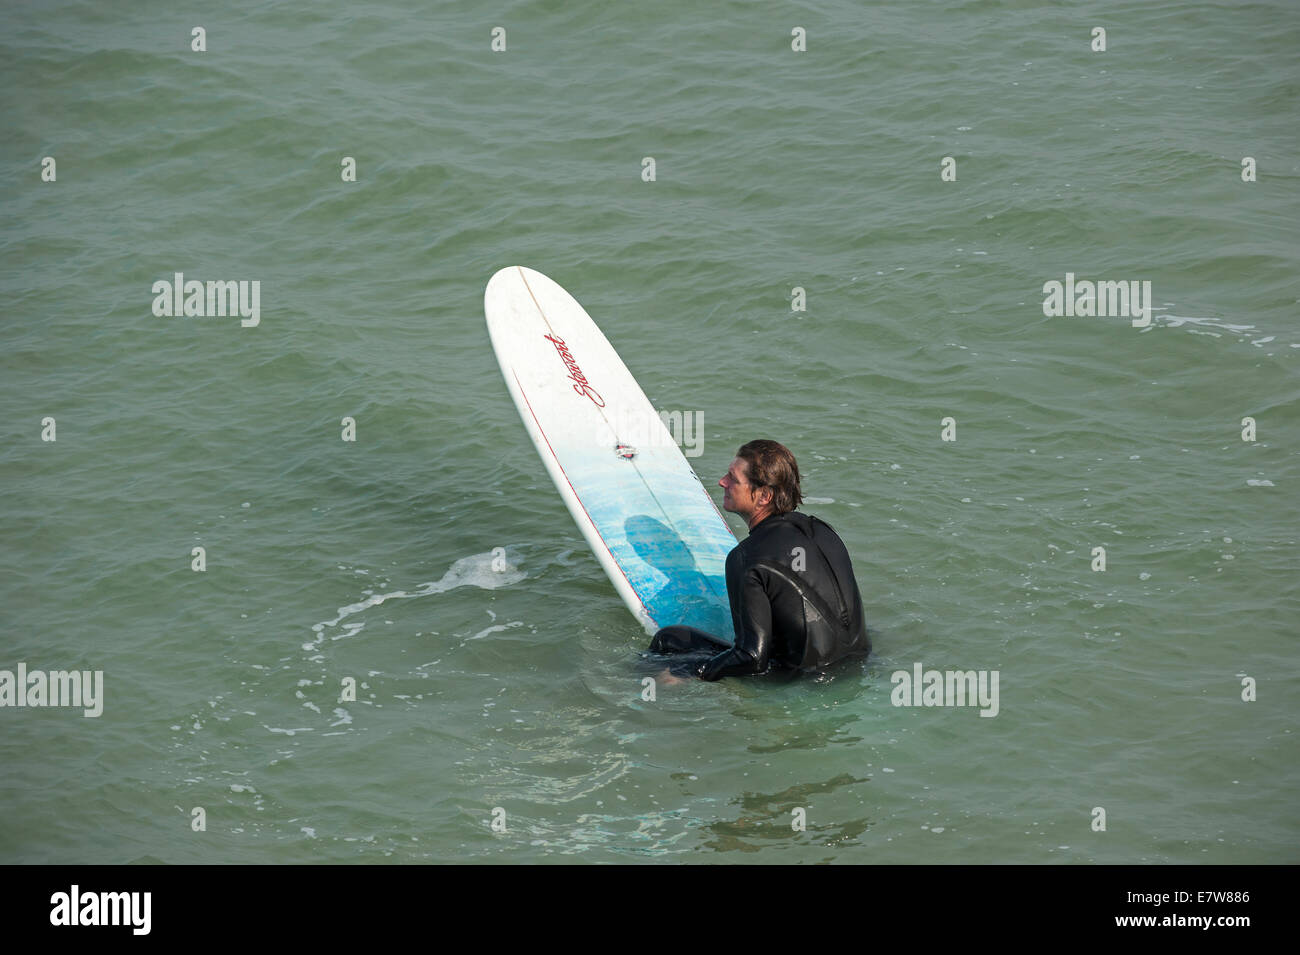 Surfer in wetsuit seduto su una tavola da surf, in attesa di una grande onda / frantumatore per navigare lungo la costa del Mare del Nord Foto Stock